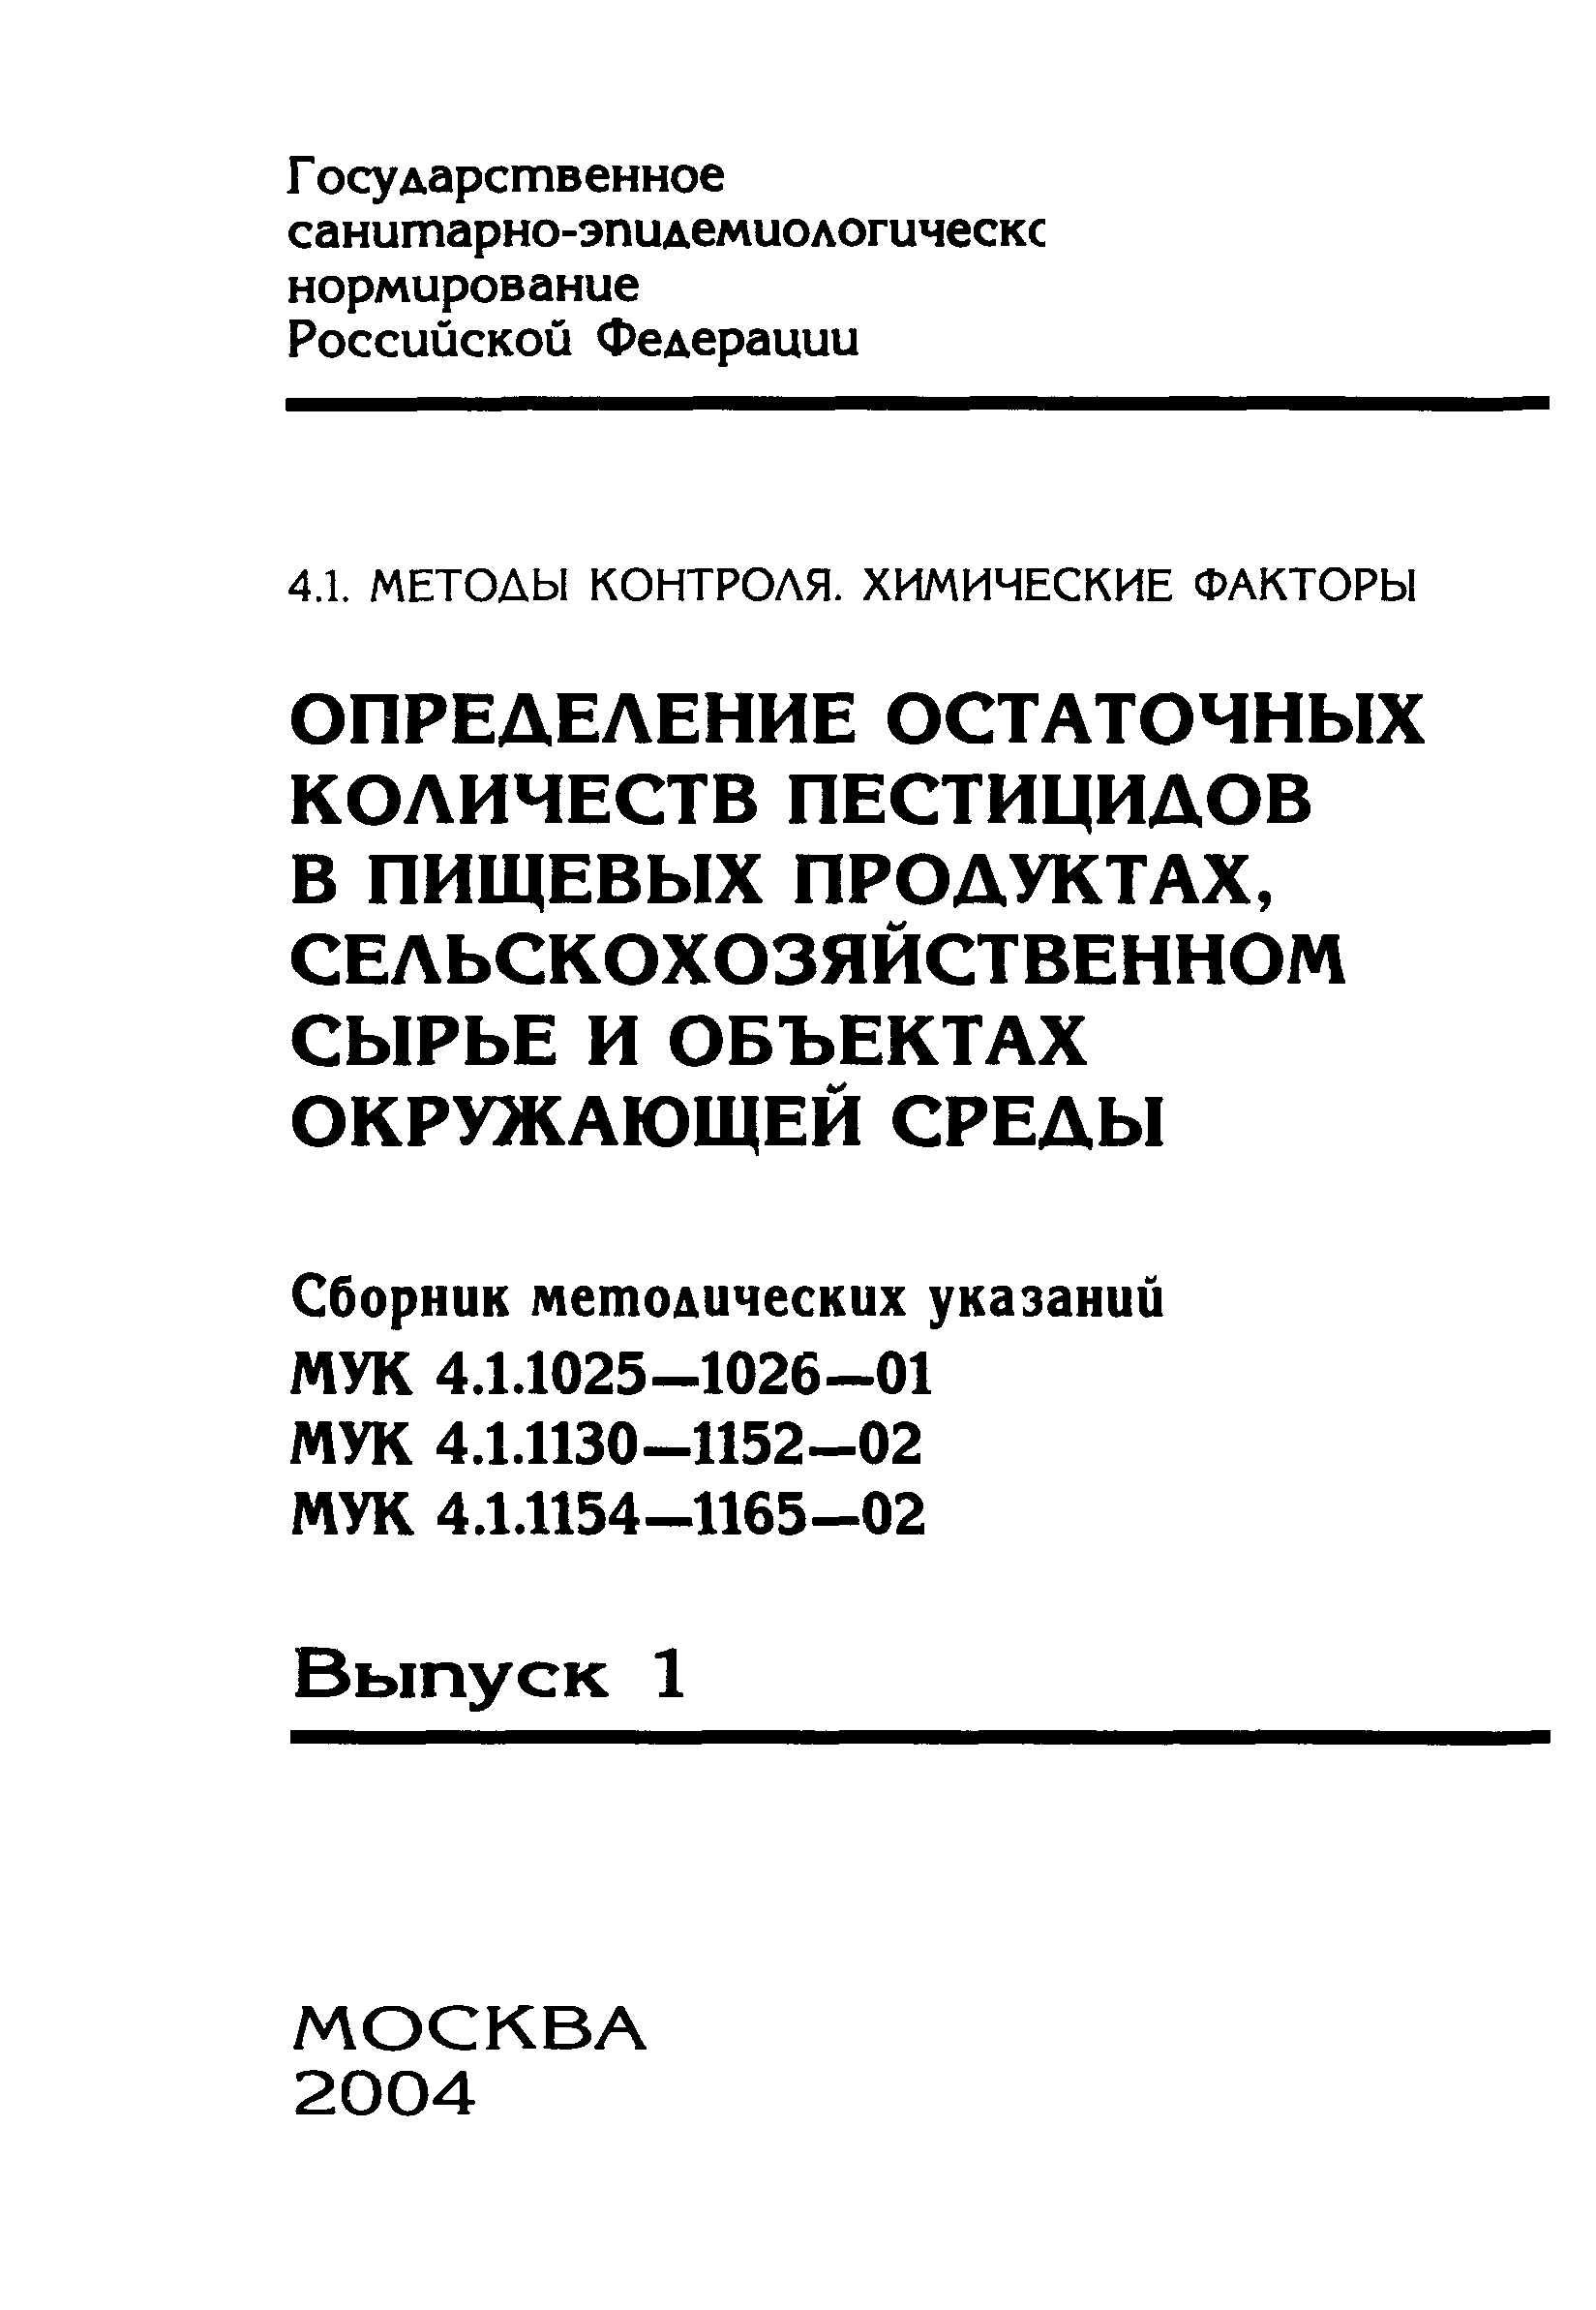 МУК 4.1.1157-02